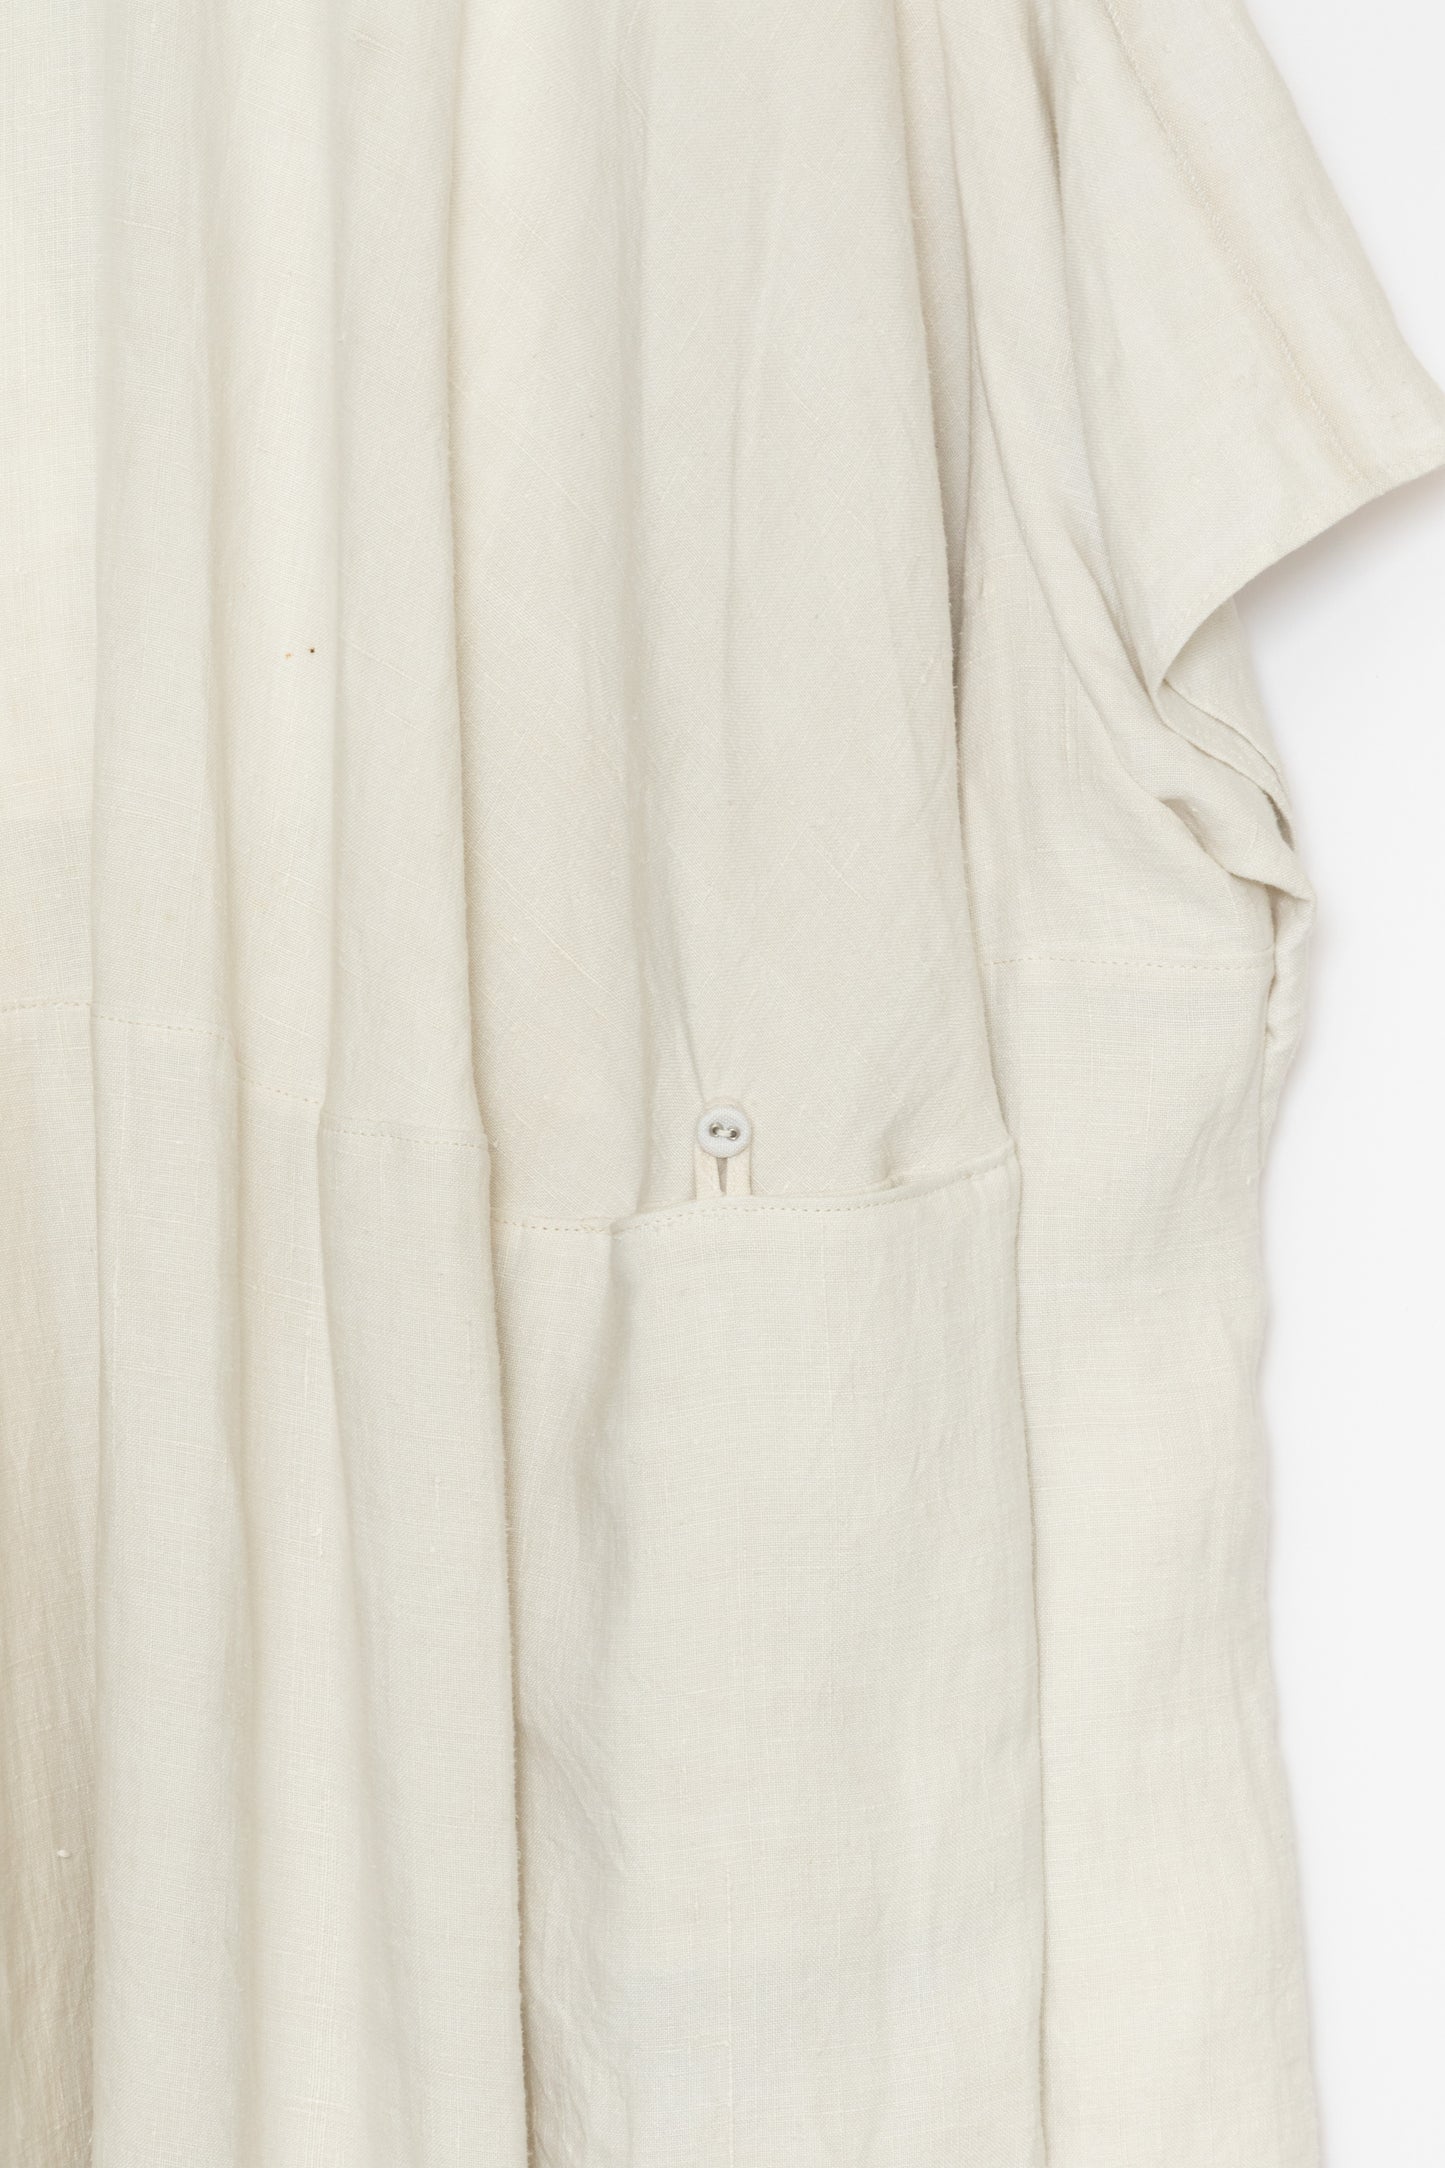 [Whiteread] V Neck Circle Dress - Linen